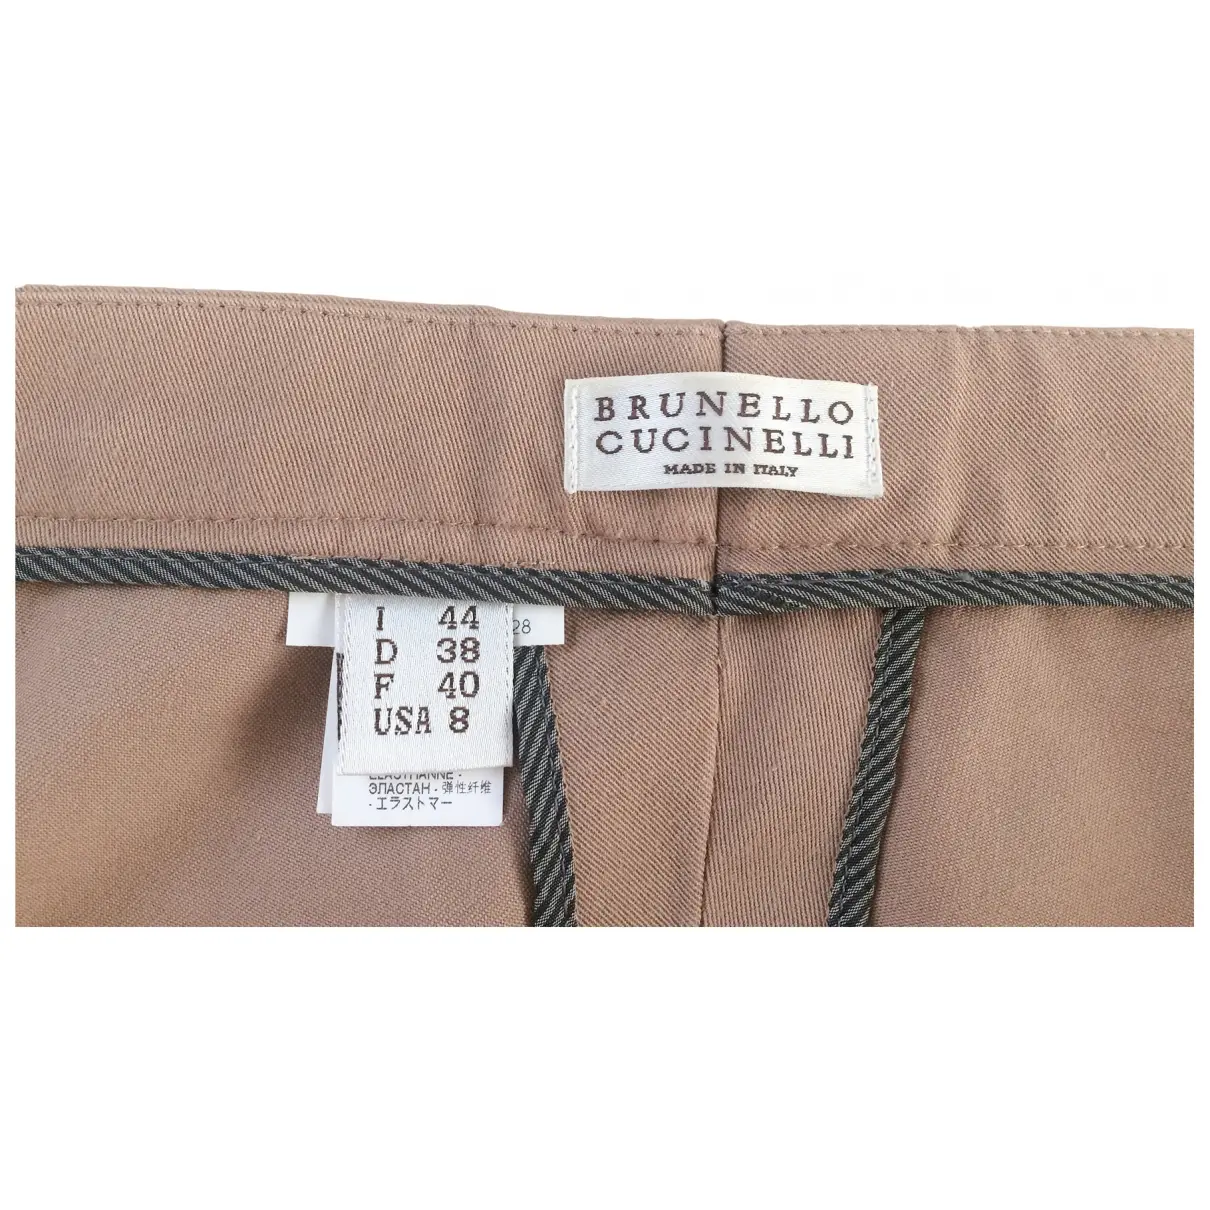 Buy Brunello Cucinelli Slim pants online